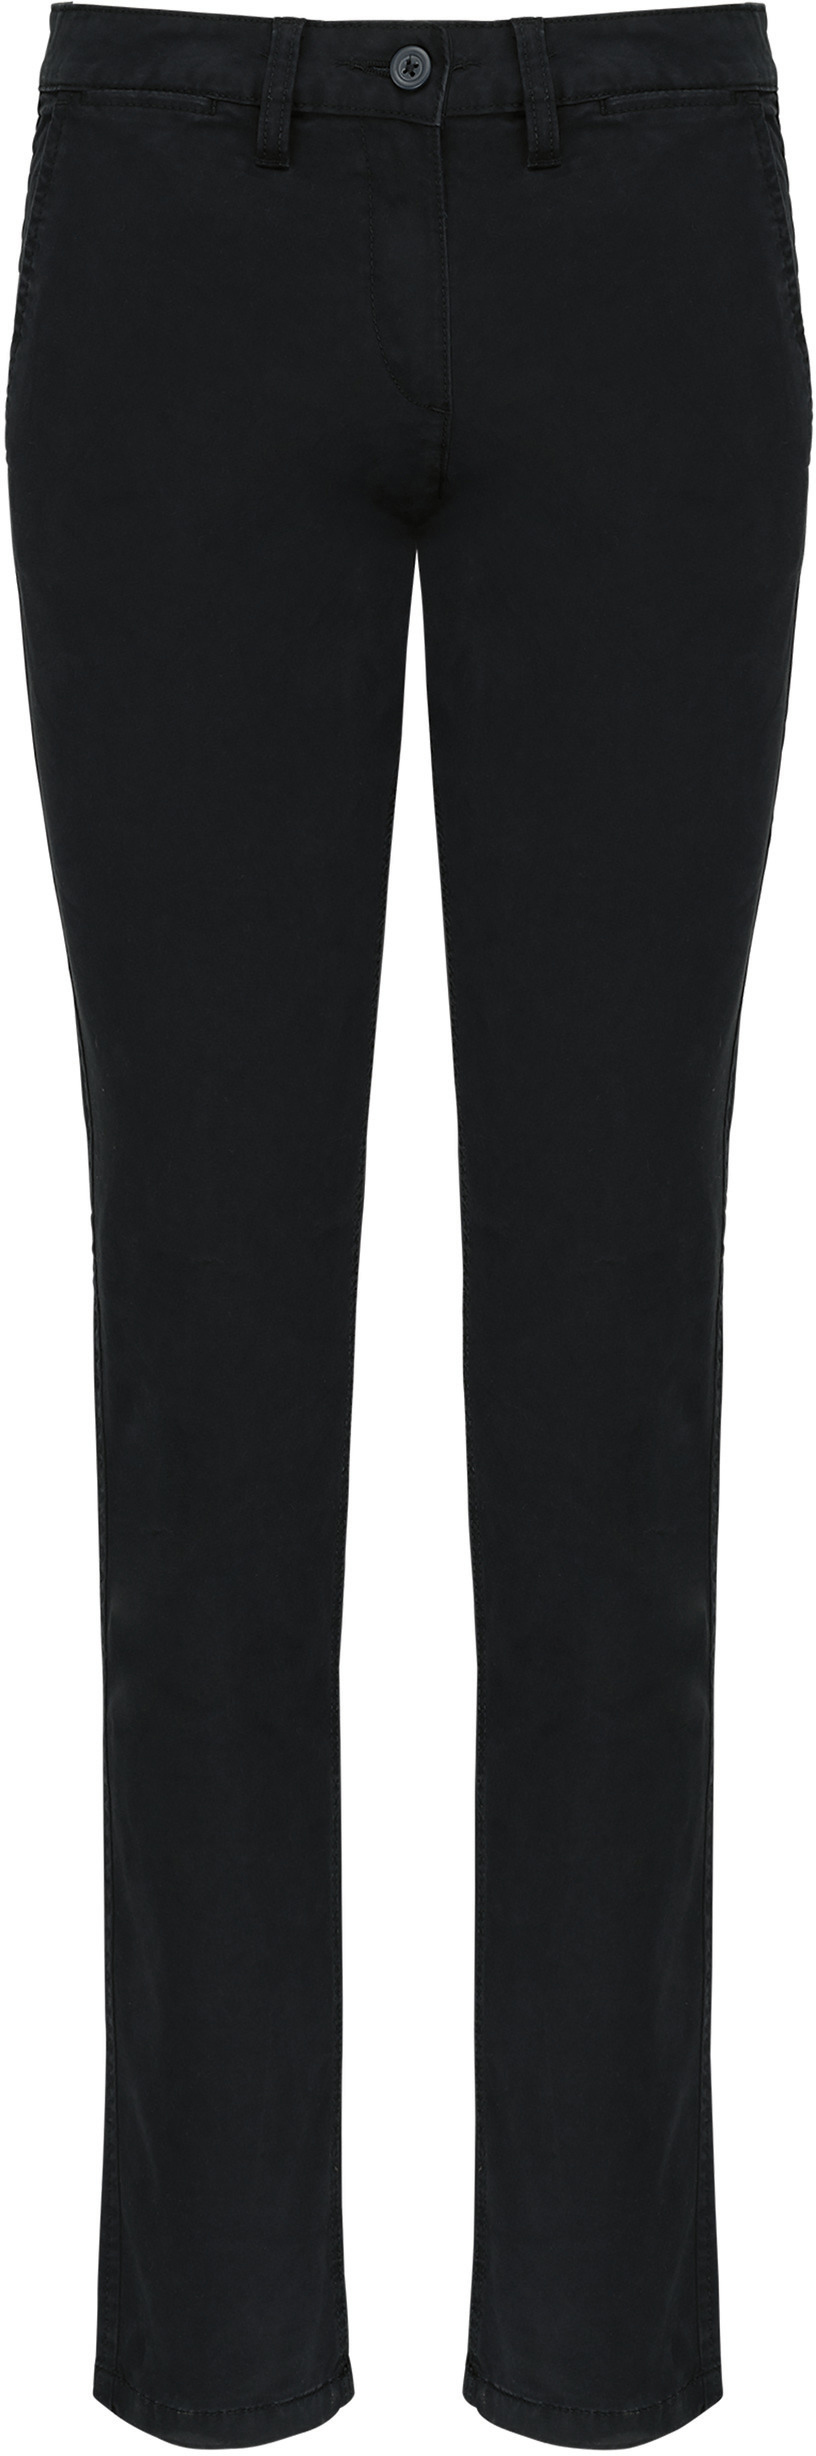 Dámské kalhoty CHINO K741 Barva: černá, Velikost: 36